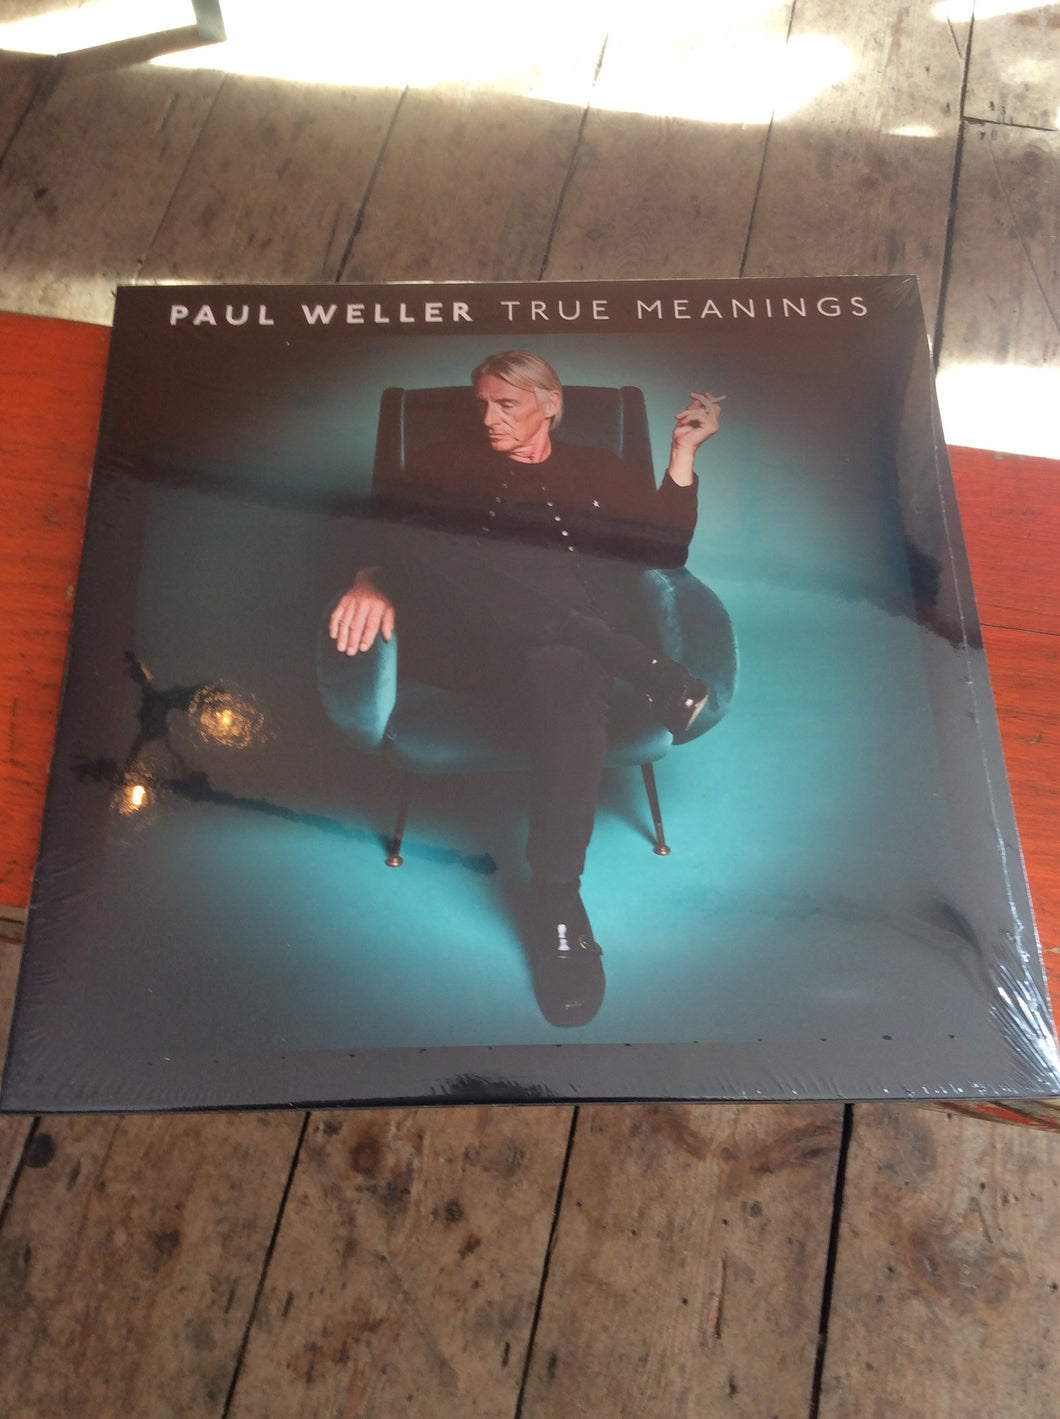 Paul Weller - True Meanings